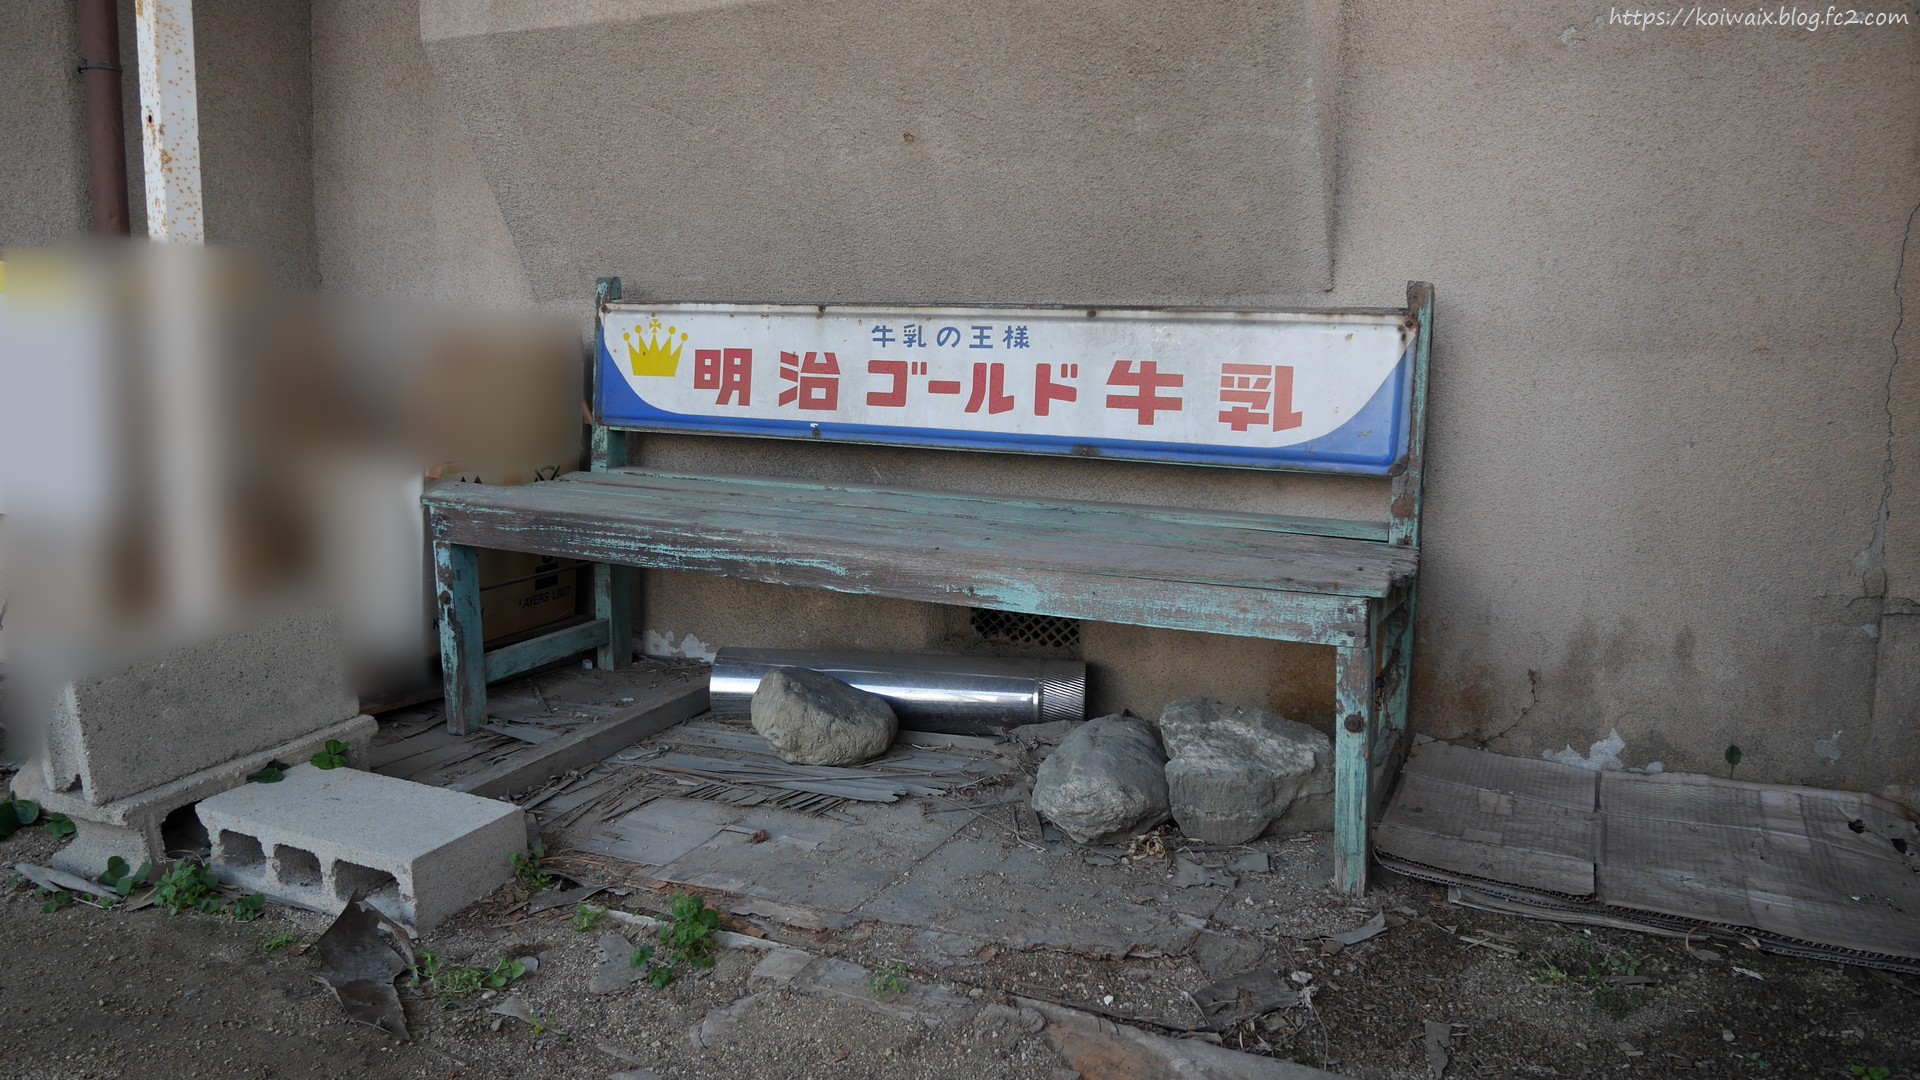 明治乳業の琺瑯看板付きベンチ - 奈良の廃景